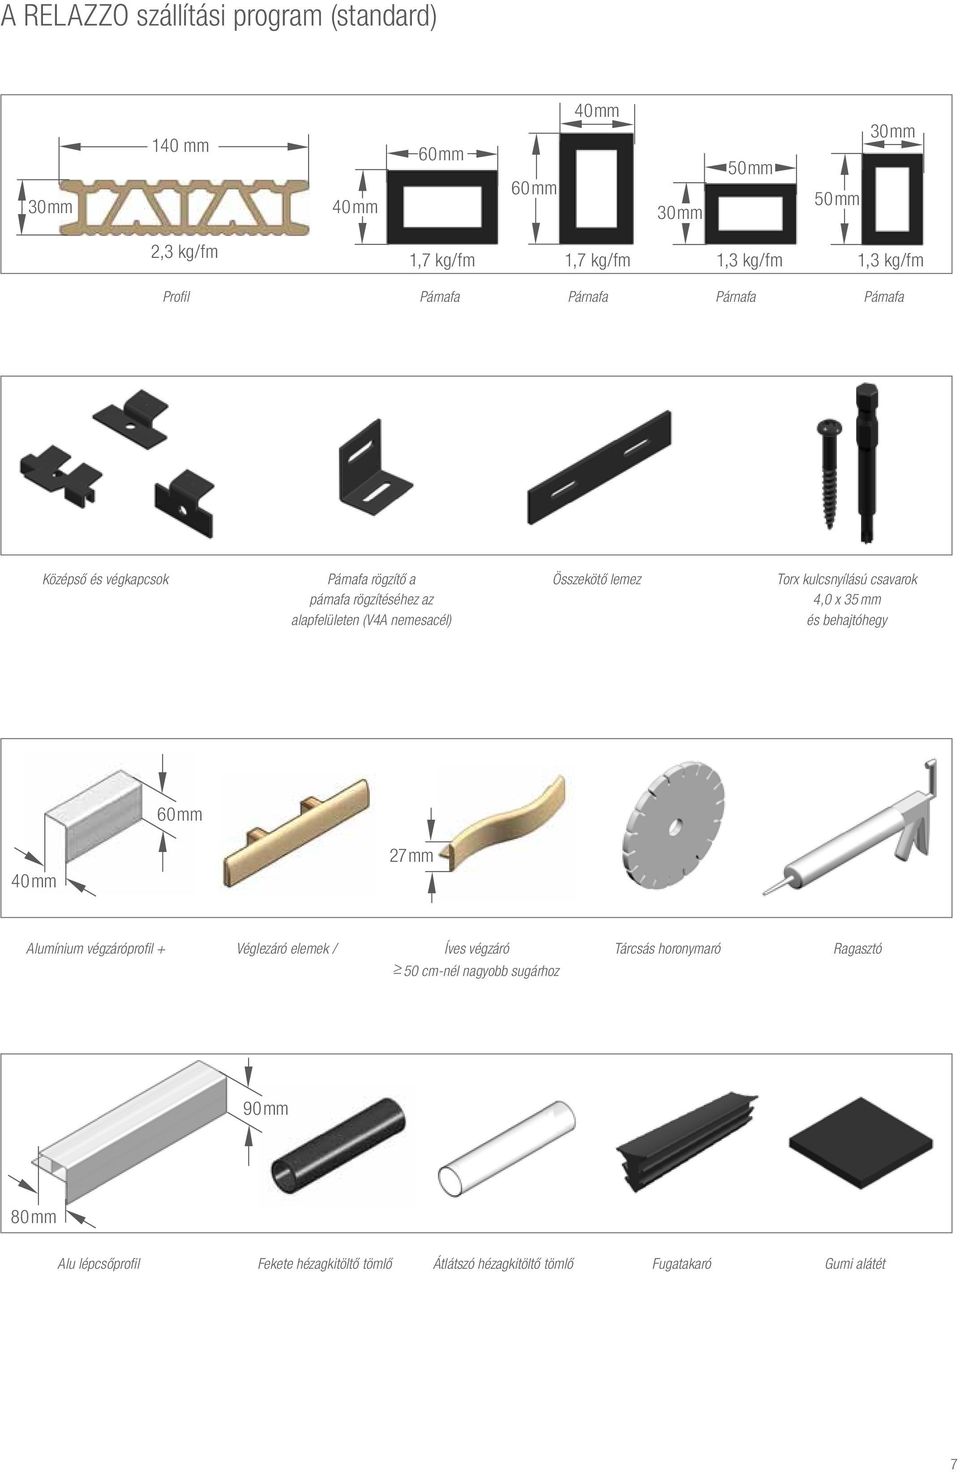 lemez Torx kulcsnyílású csavarok 4,0 x 35 mm és behajtóhegy 60 mm 40 mm 27 mm Alumínium végzáróprofil + Véglezáró elemek / Íves végzáró Tárcsás